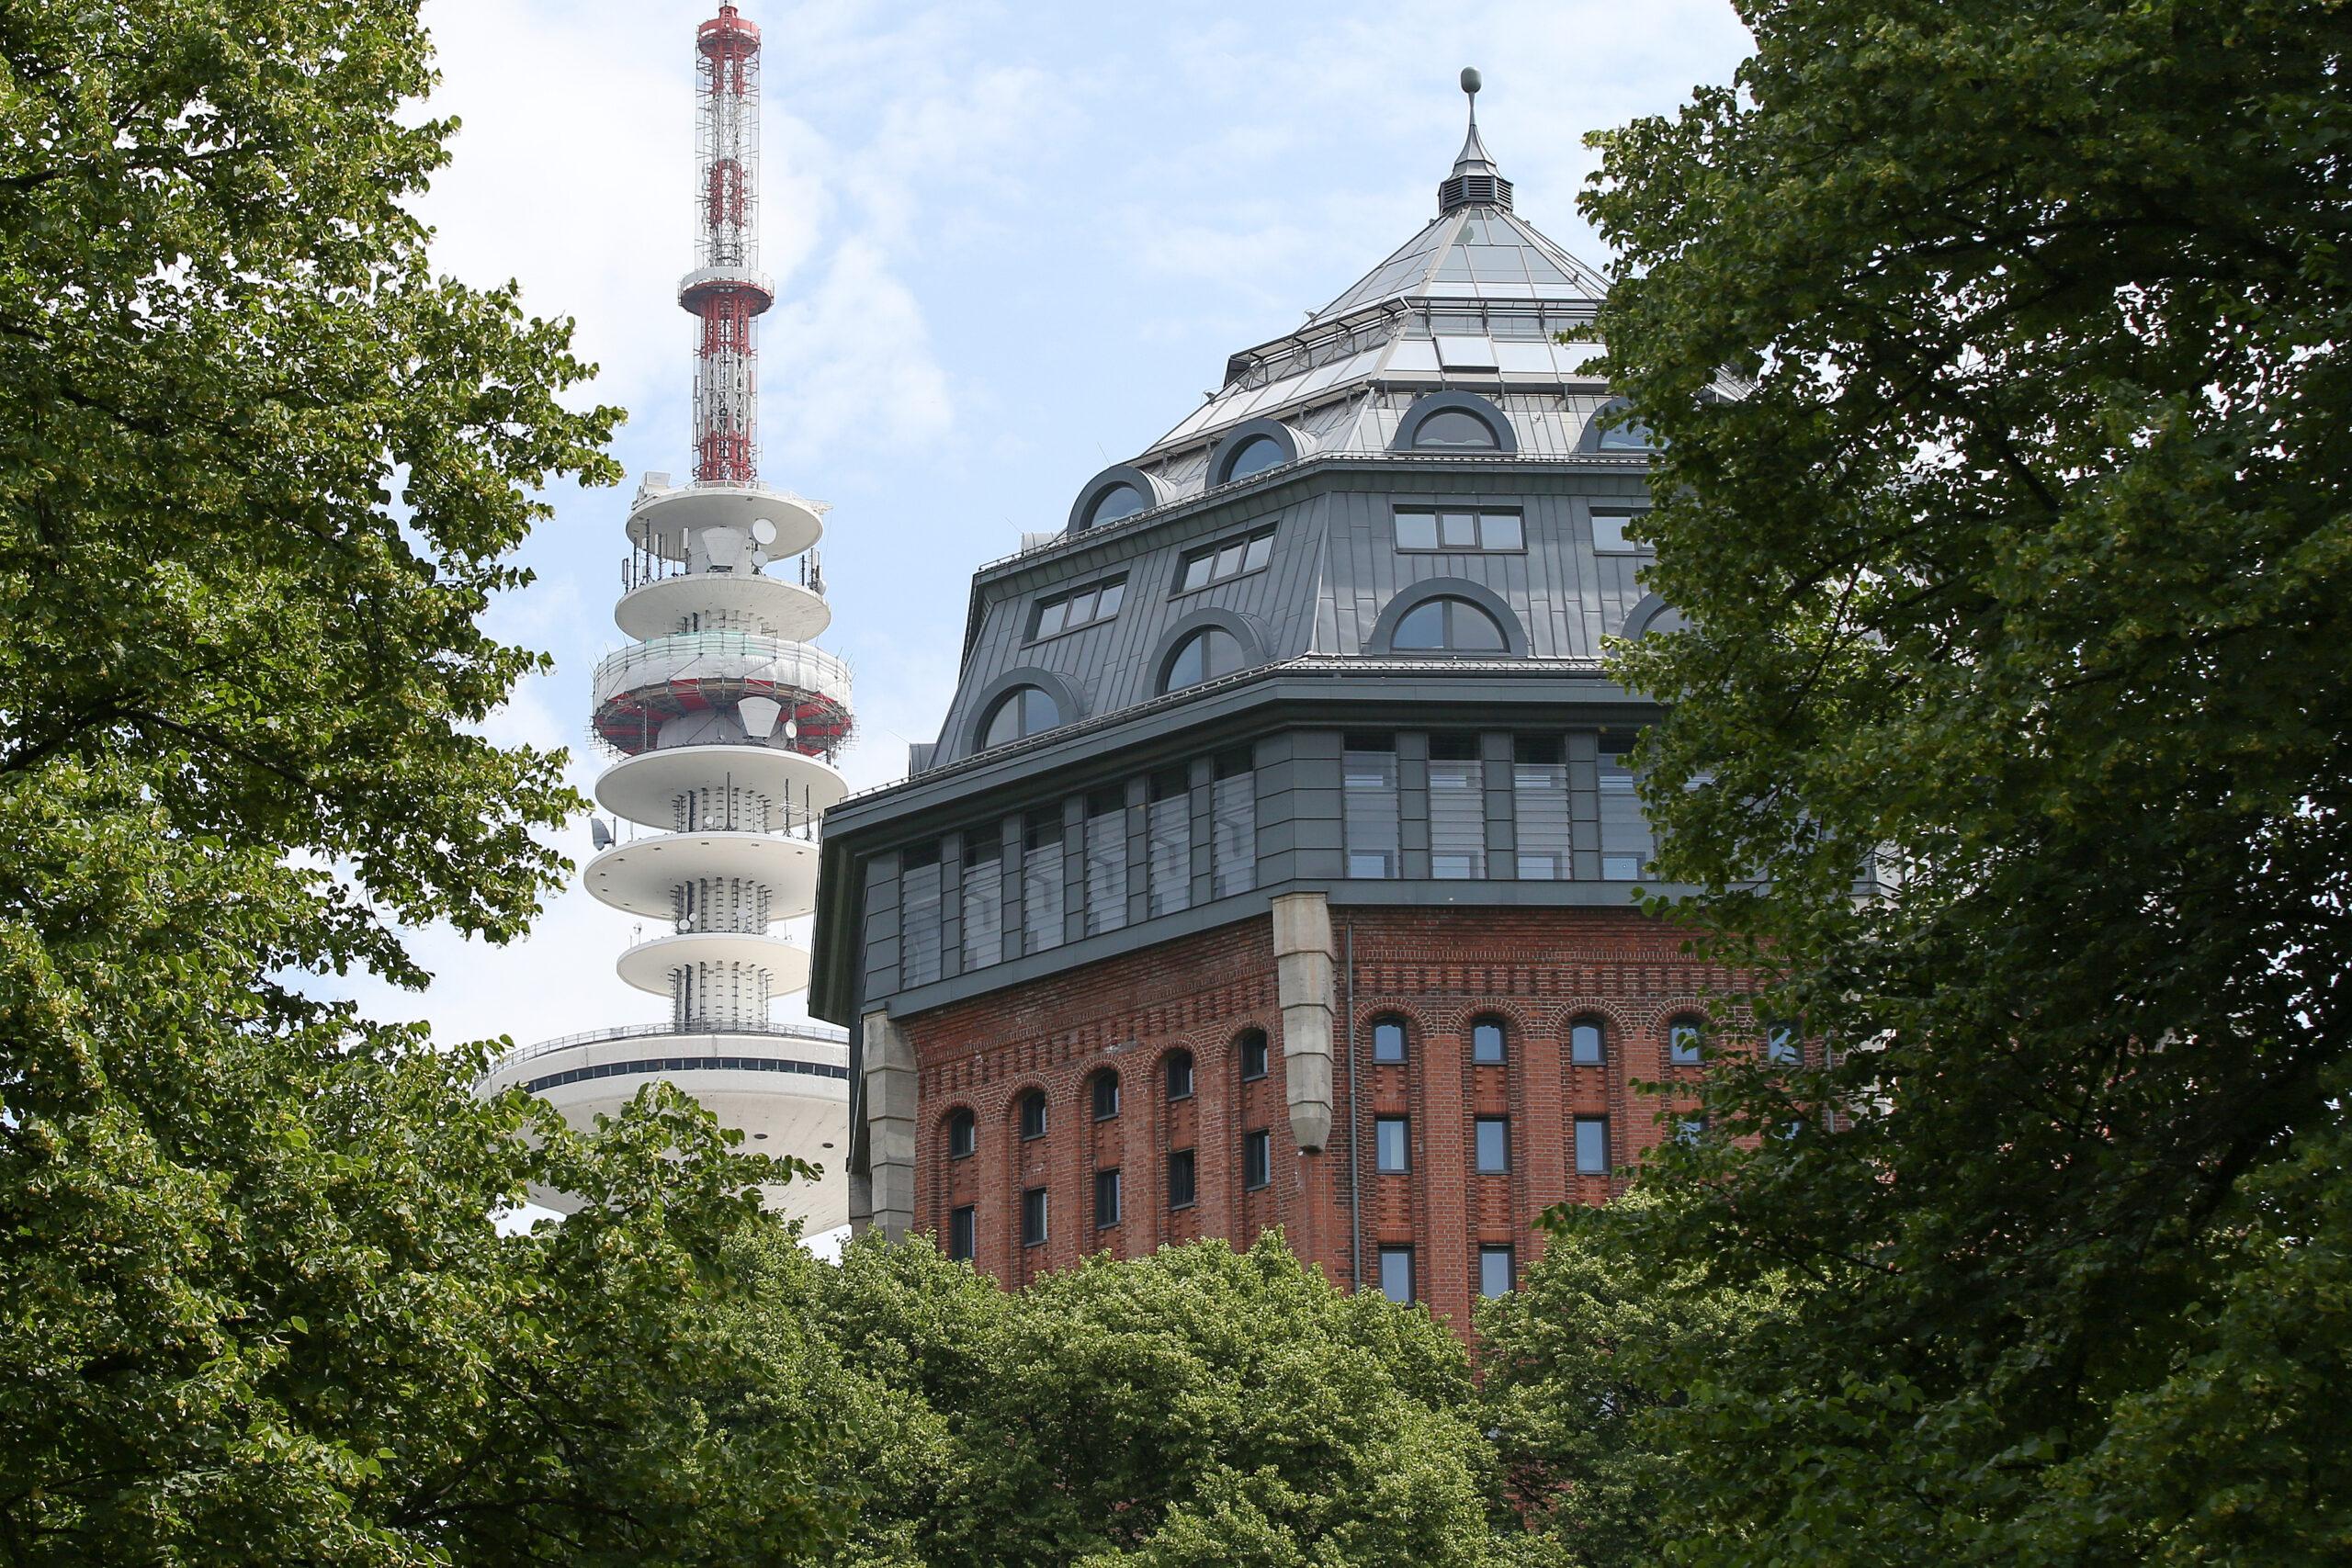 Der Wasserturm im Schanzenpark war einmal der größte in Europa. Heute beherbergt er das Hotel „Mövenpick“.